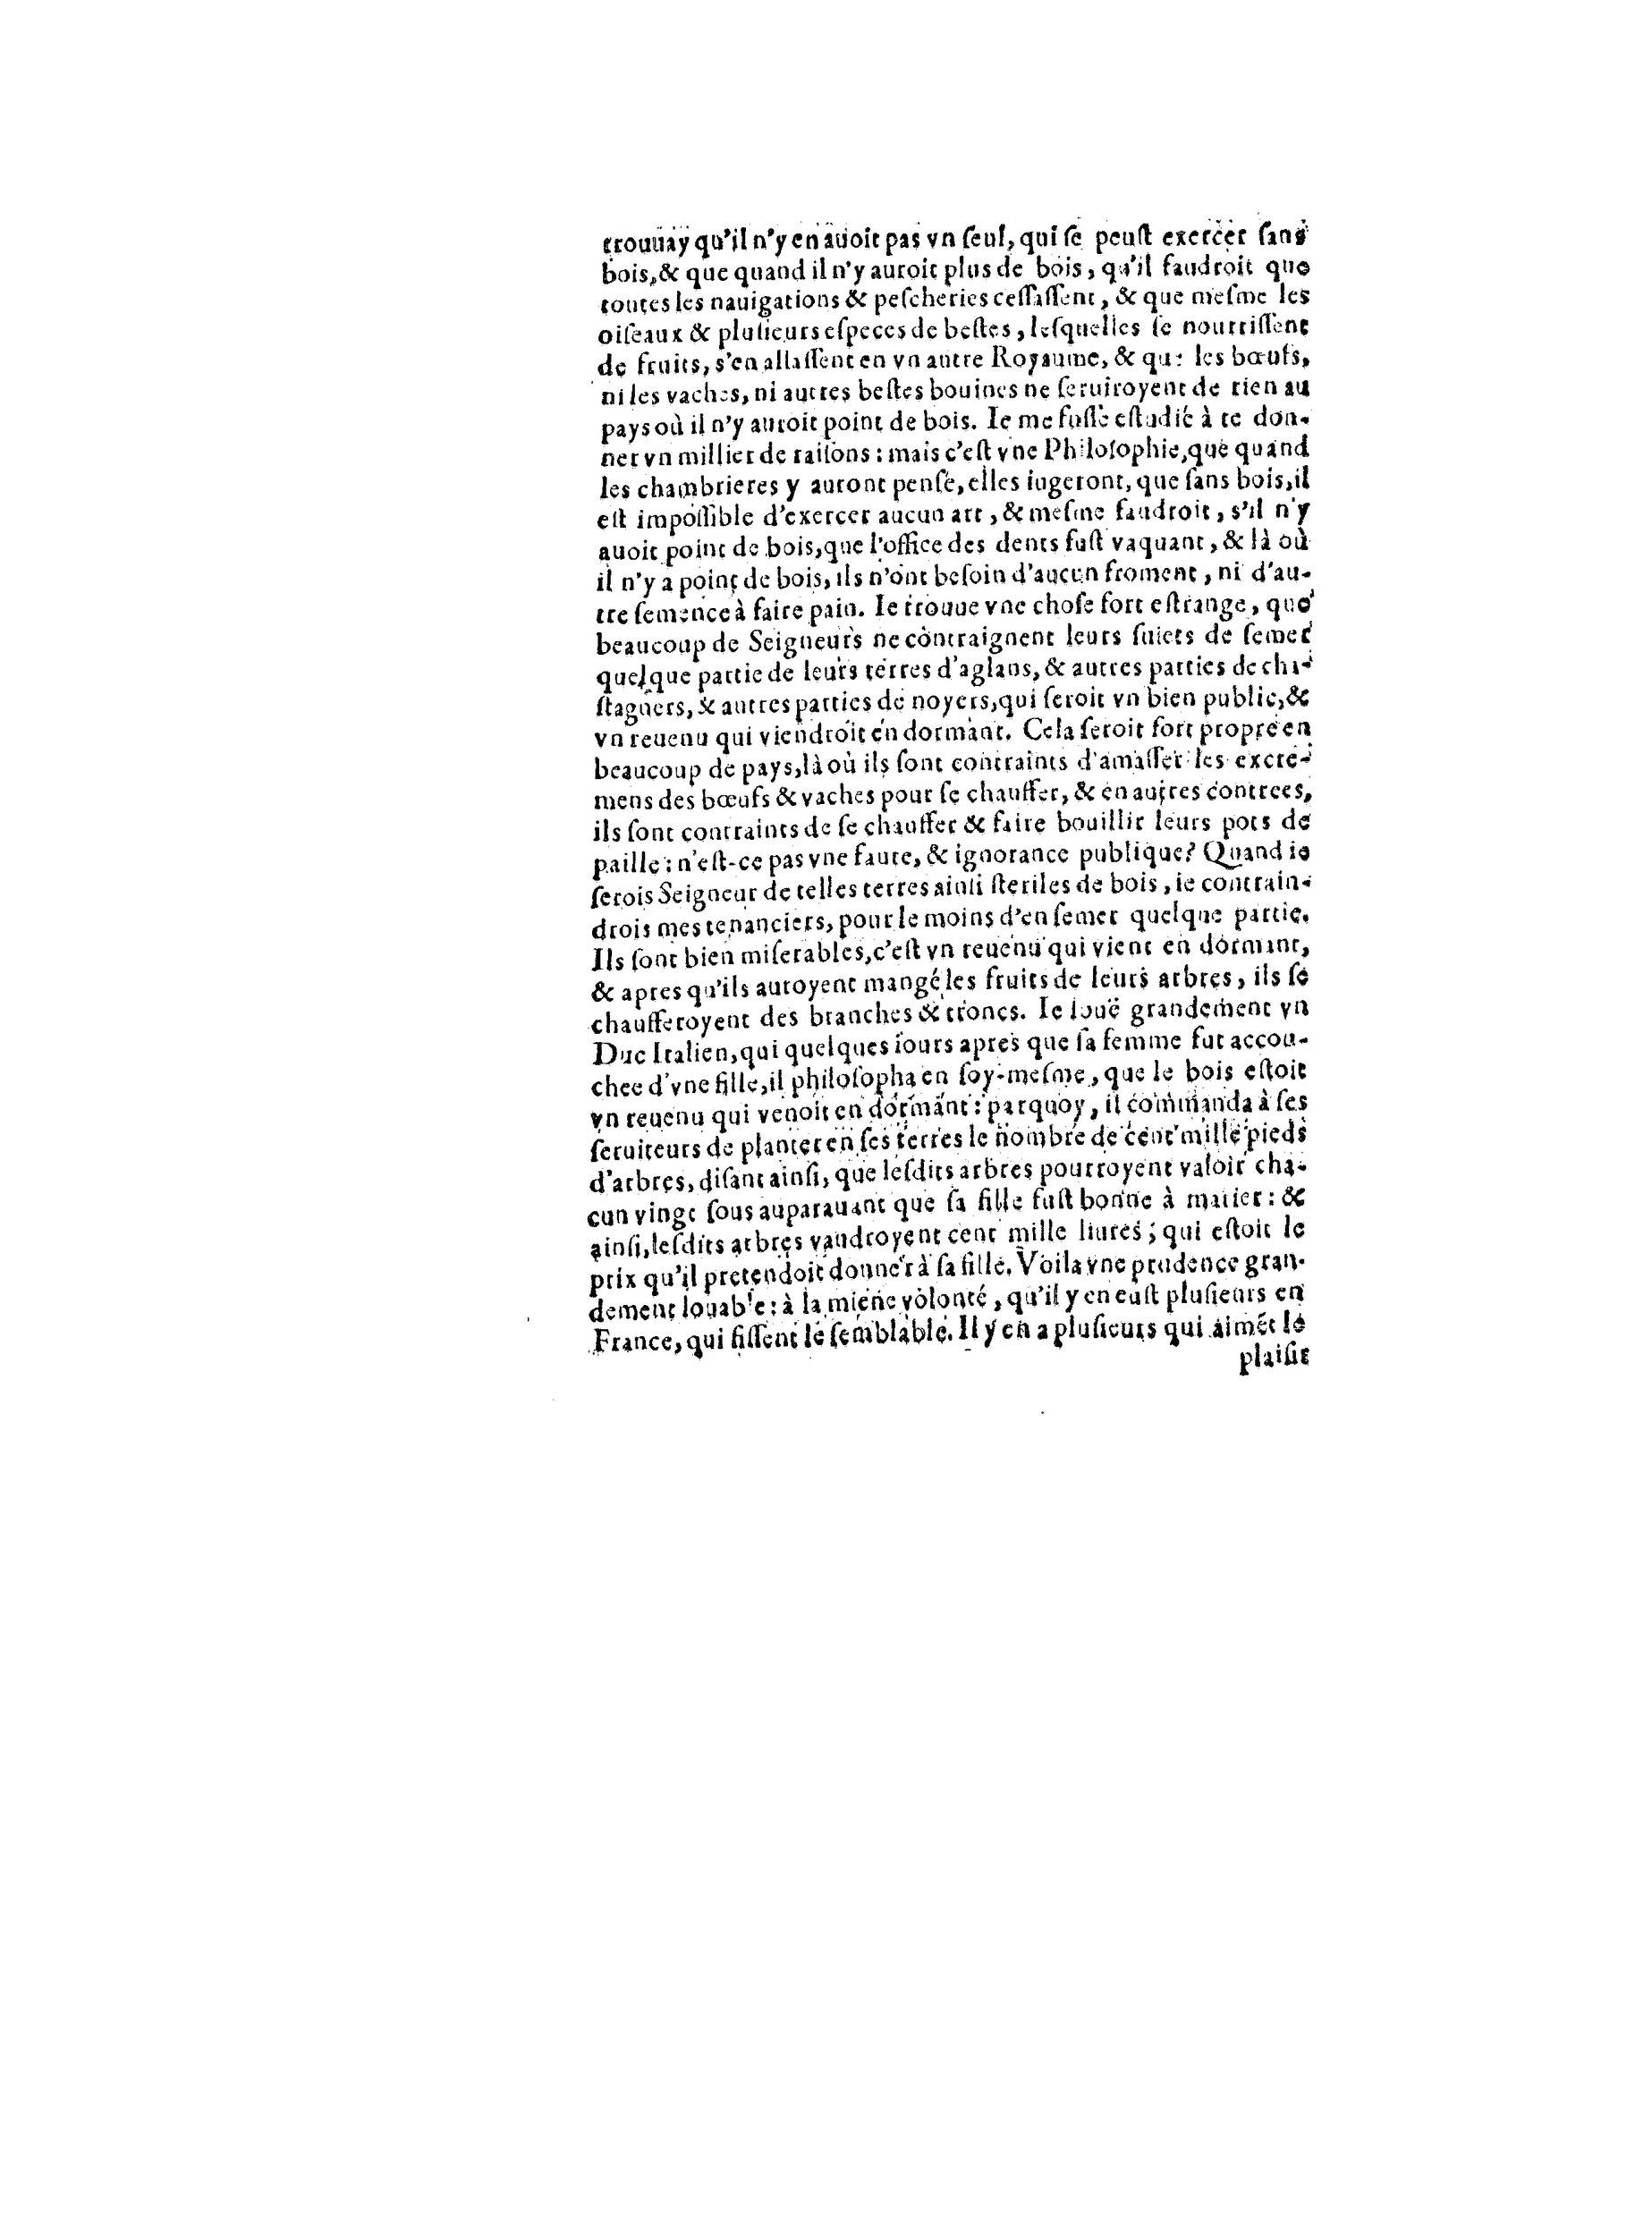 1563 Recepte veritable Berton_BNF_Page_095.jpg